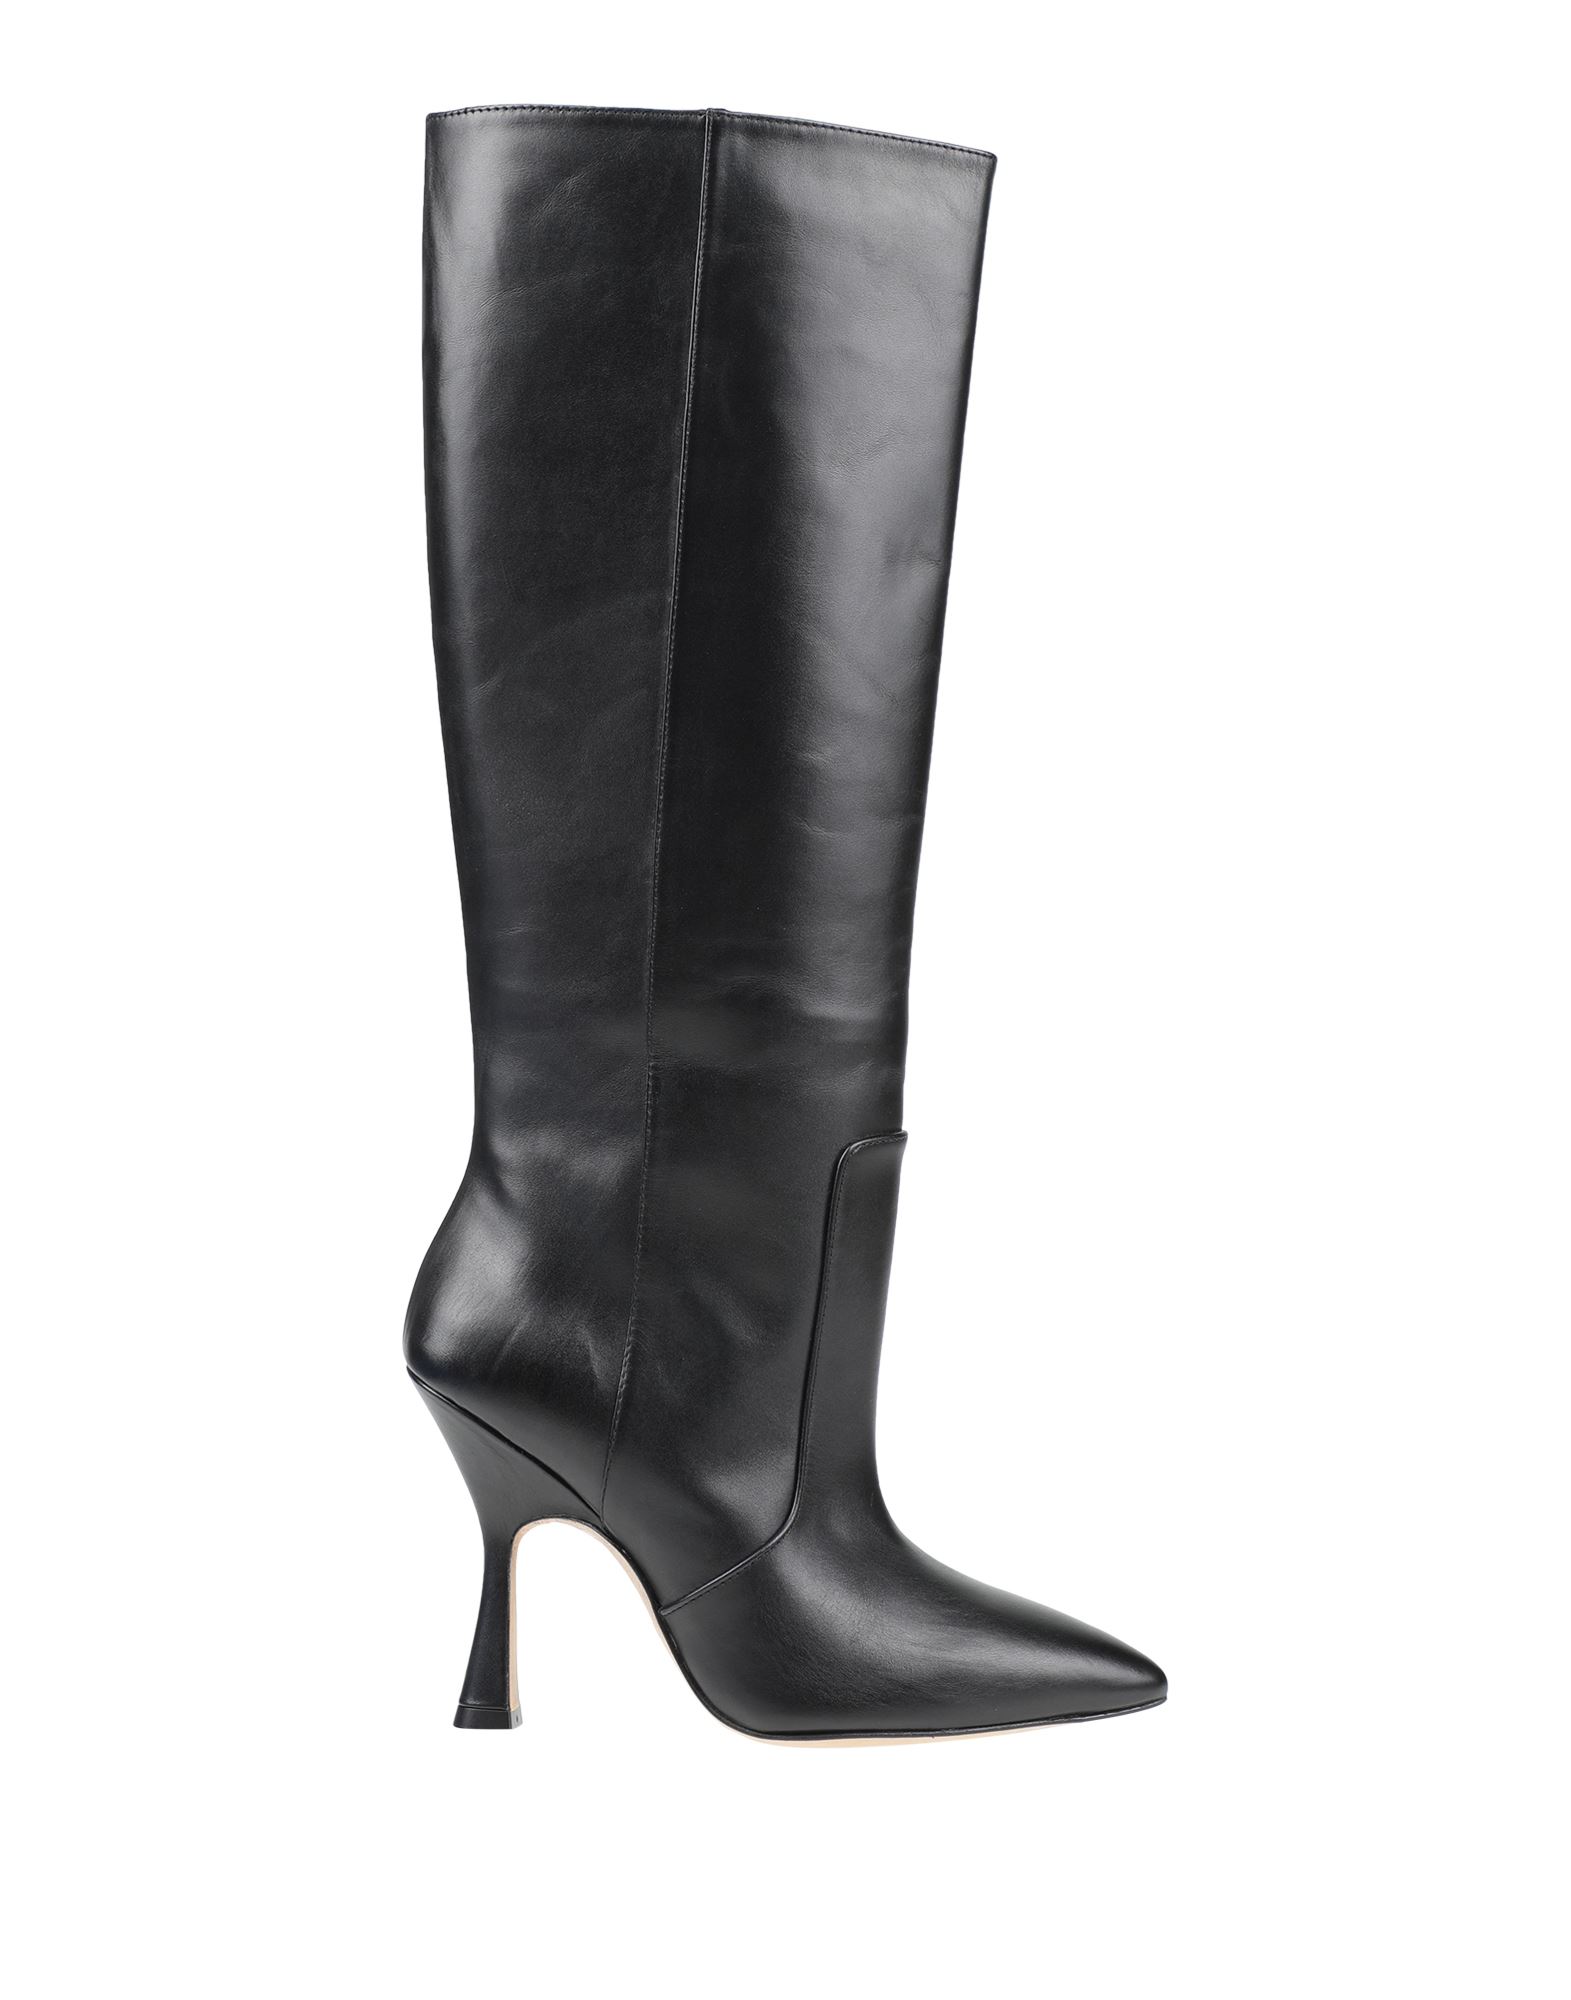 Shop Stuart Weitzman Woman Boot Black Size 7.5 Calfskin